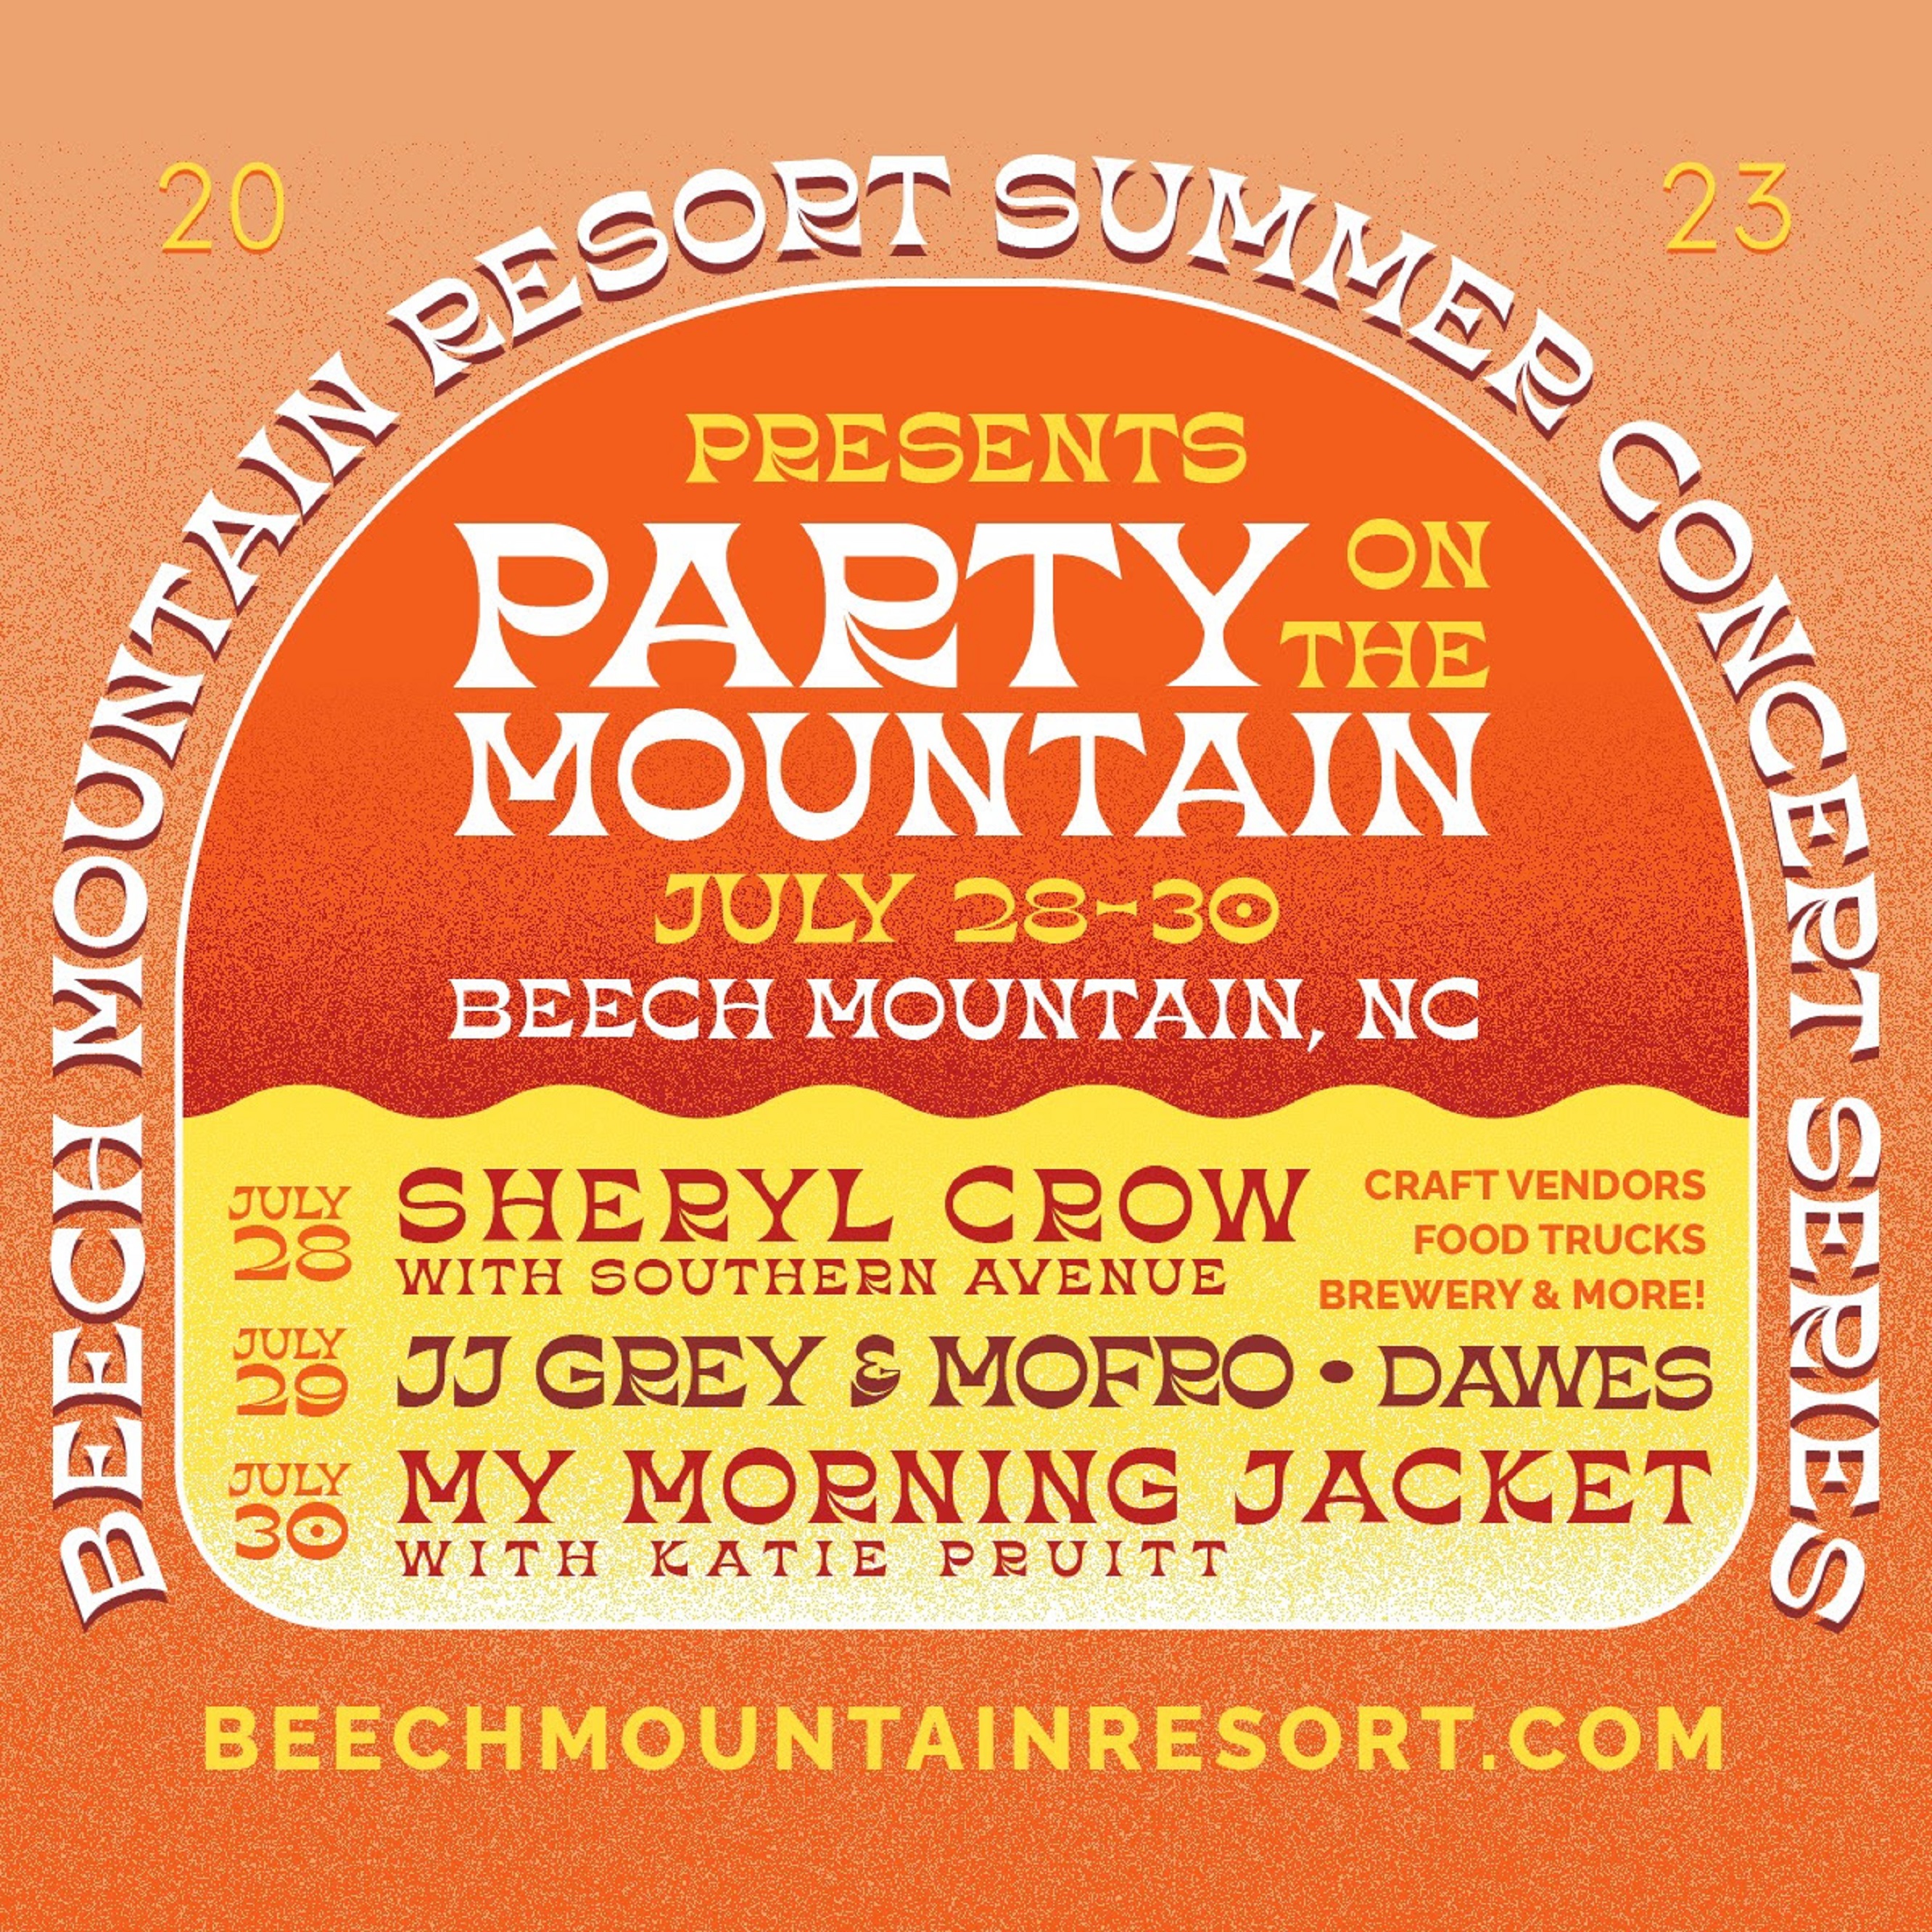 BEECH MOUNTAIN RESORT EXPANDS 2023 SUMMER MUSIC SERIES